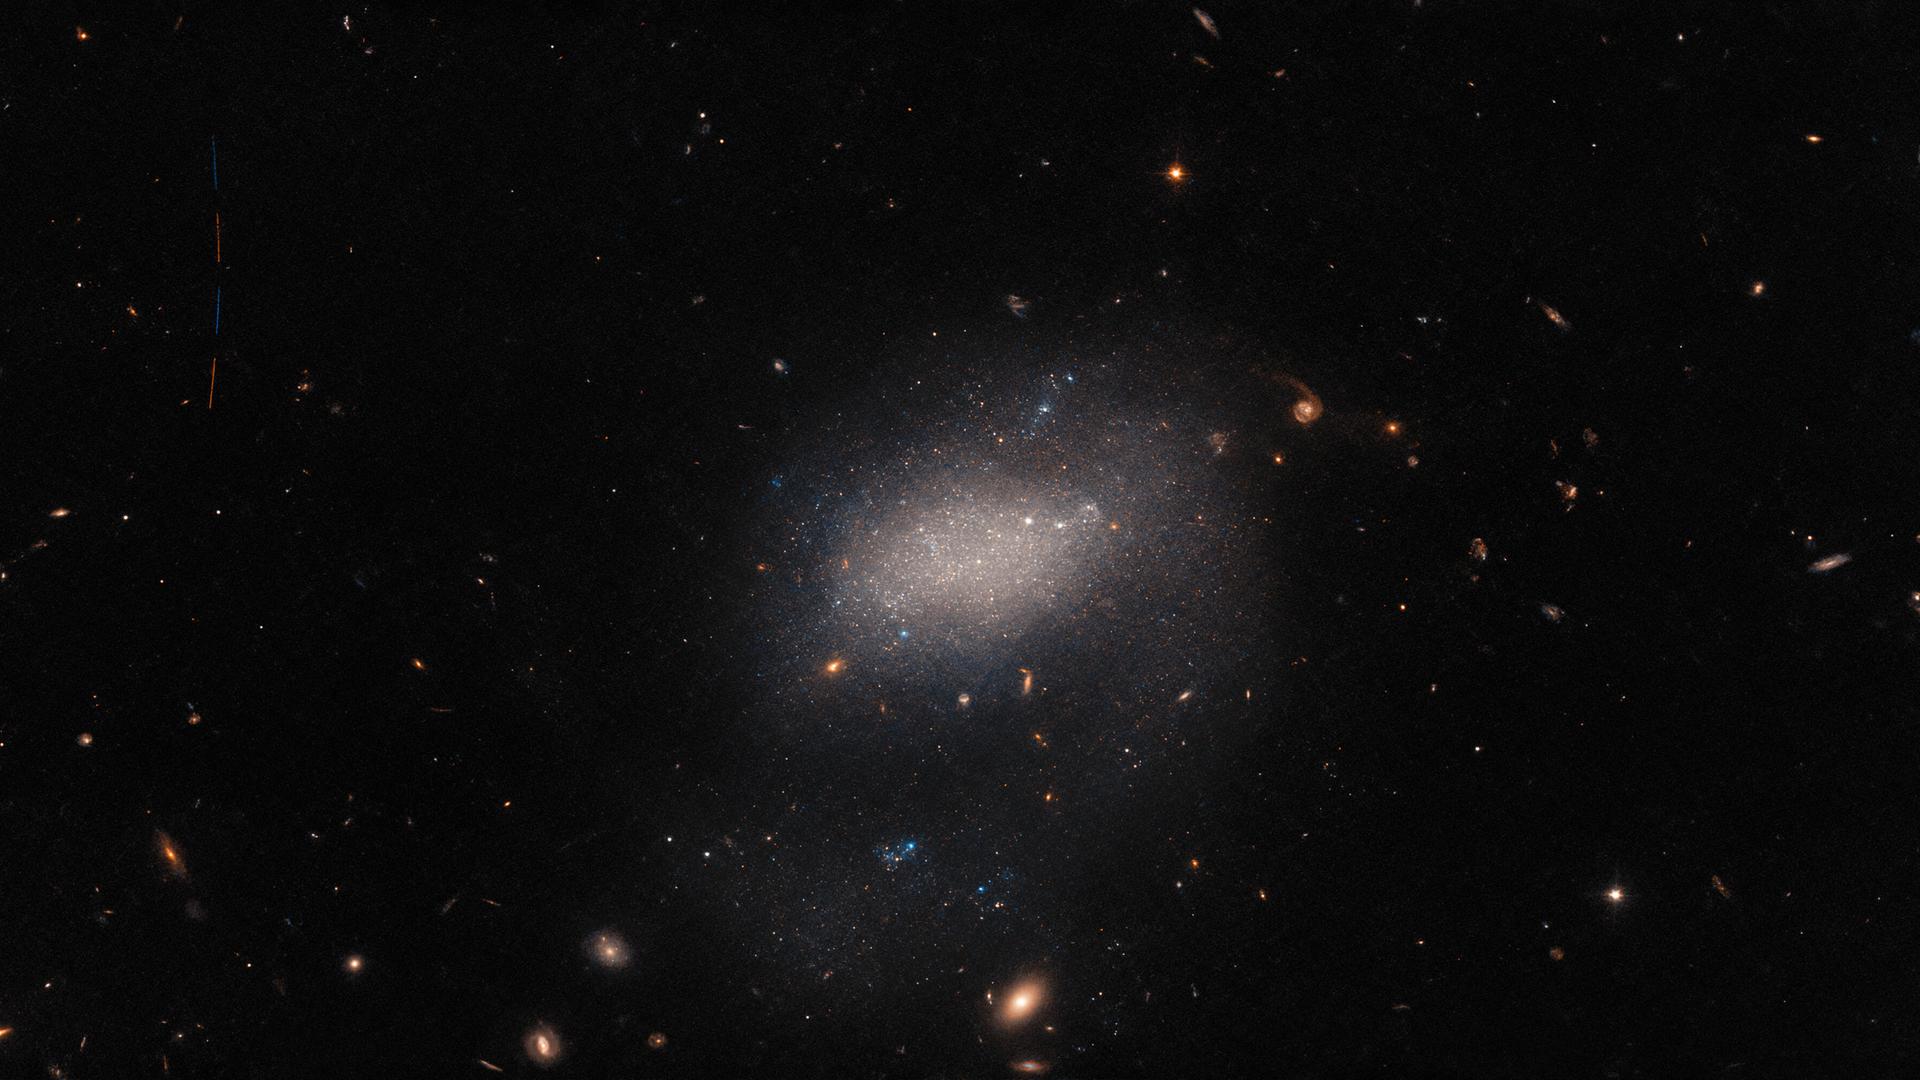 Galaxie UGC 7983 mit Asteroid im Vordergrund
  
